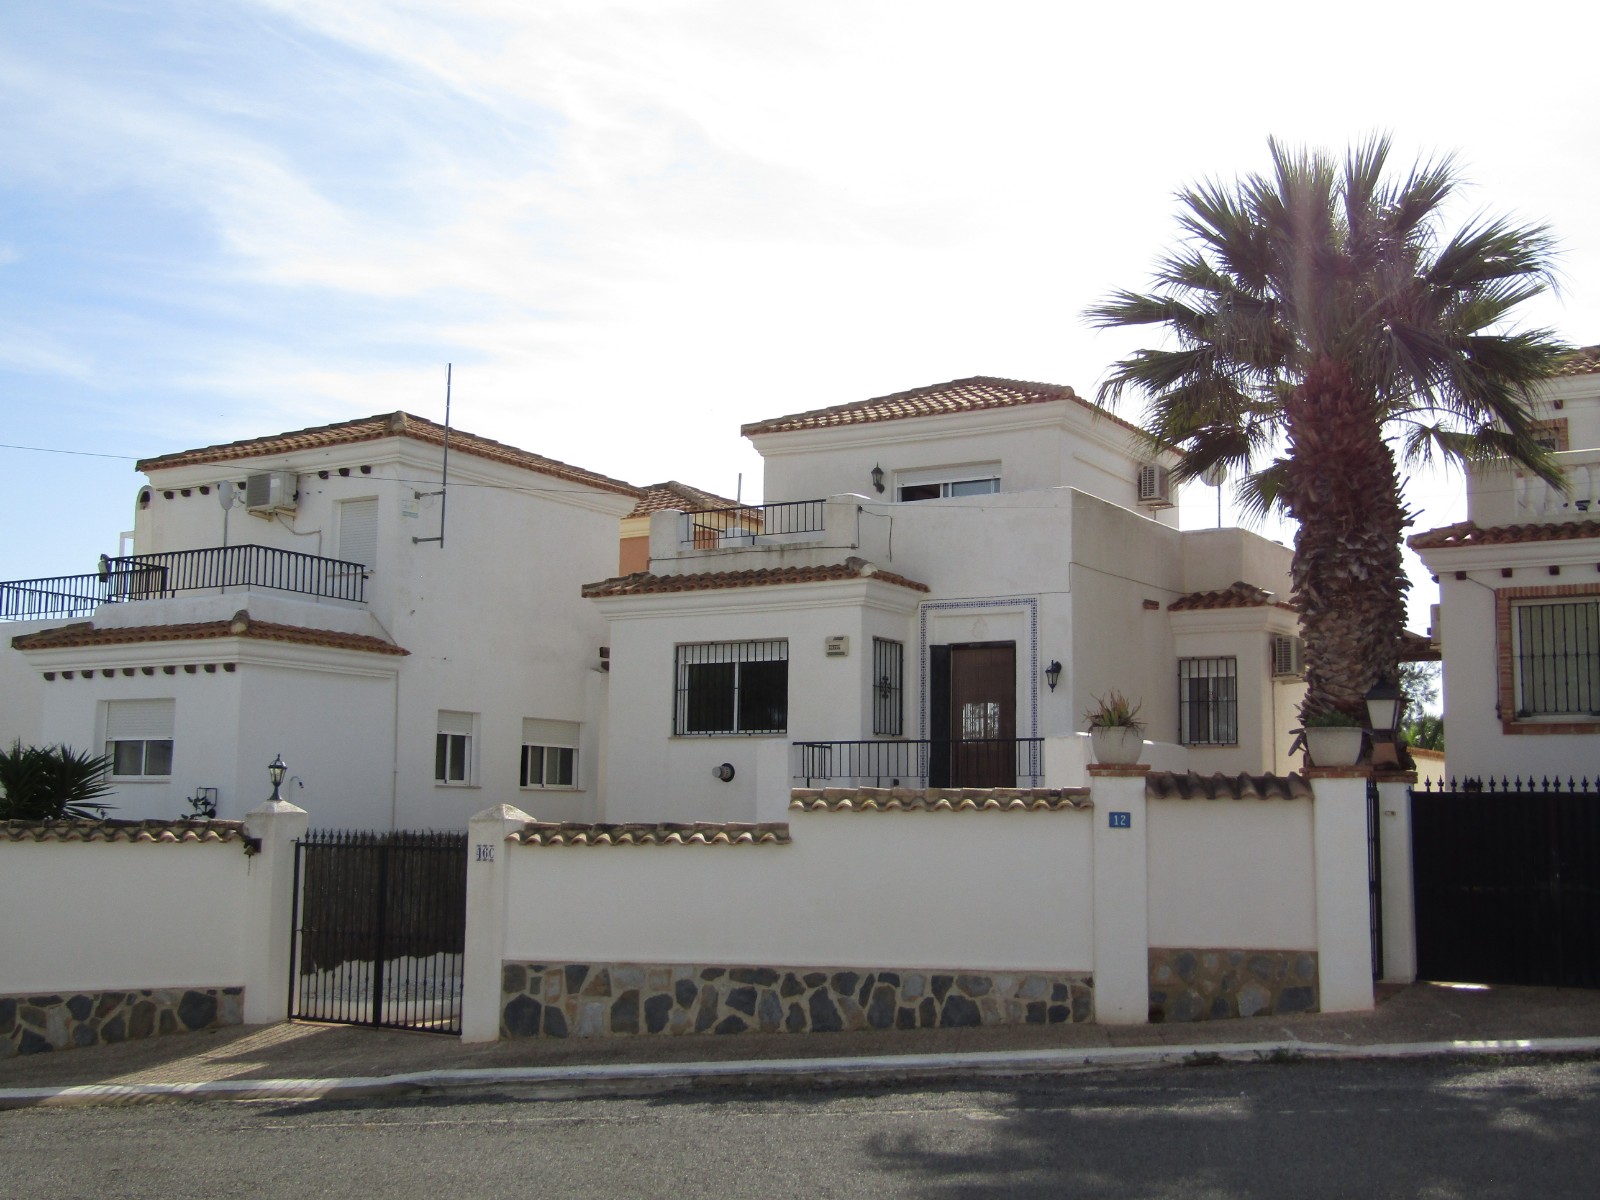 2 bedroom house / villa for sale in Orihuela Costa, Costa Blanca